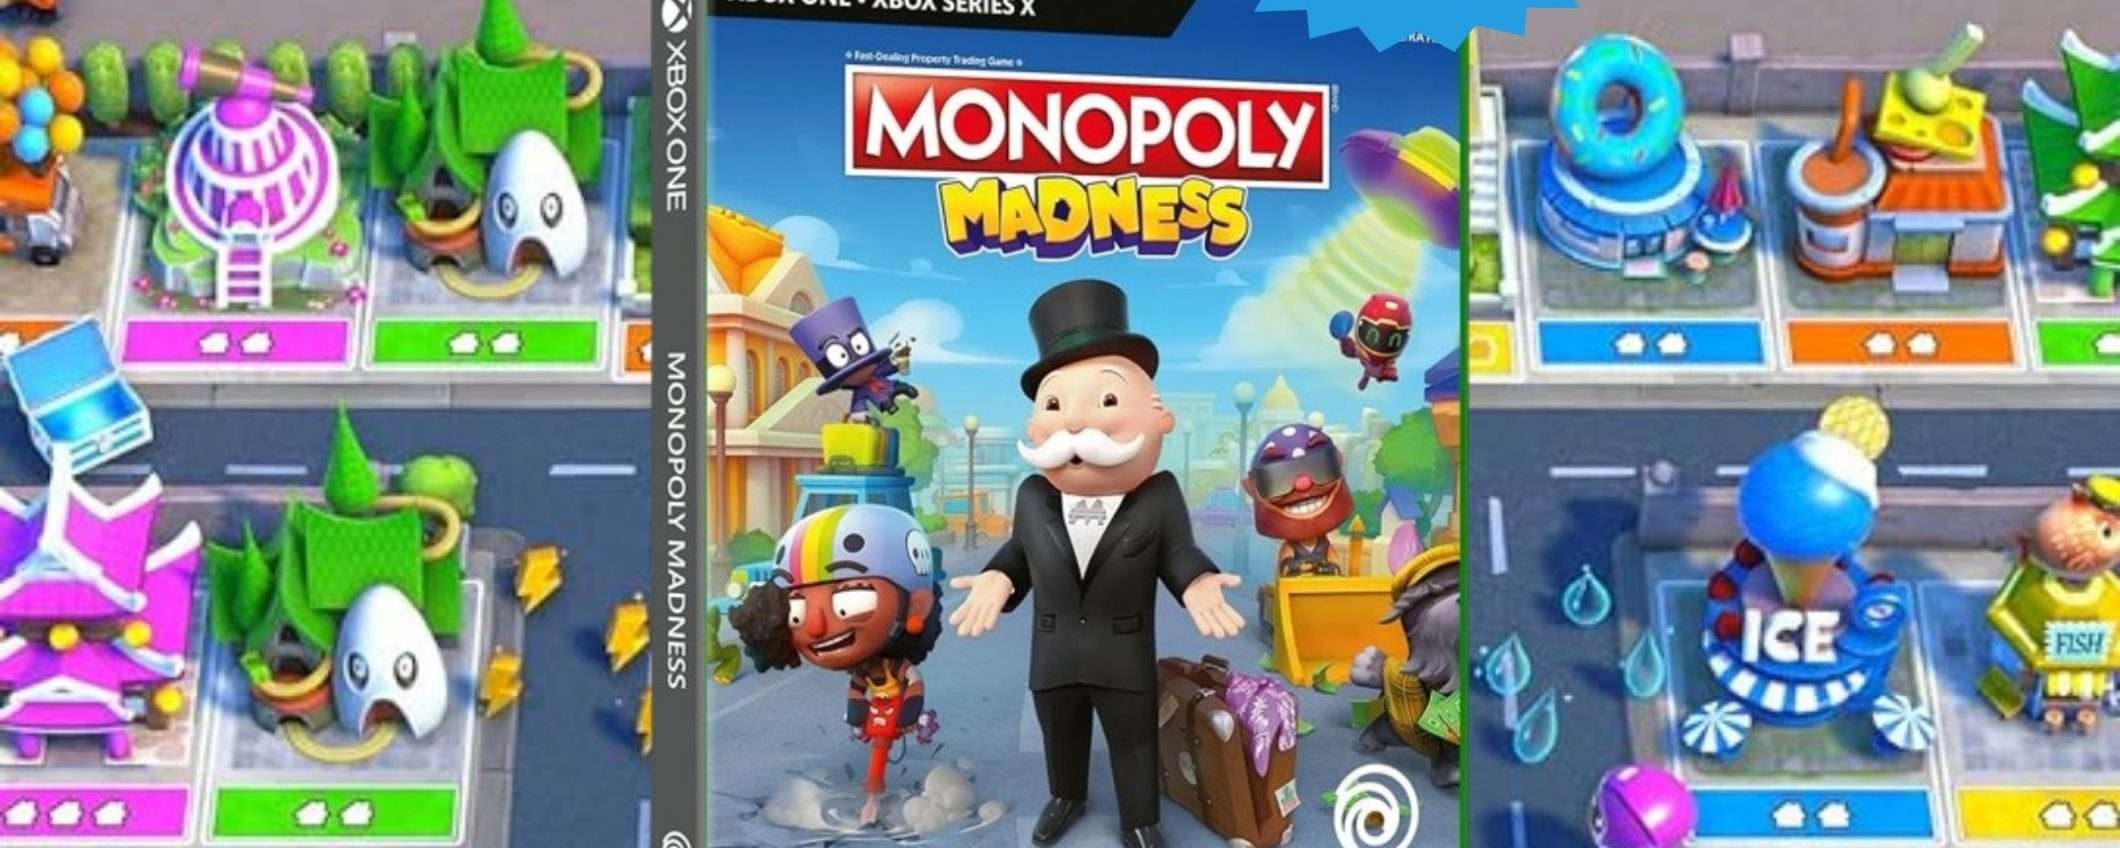 Monopoly Madness per Xbox: CROLLO del prezzo su Amazon